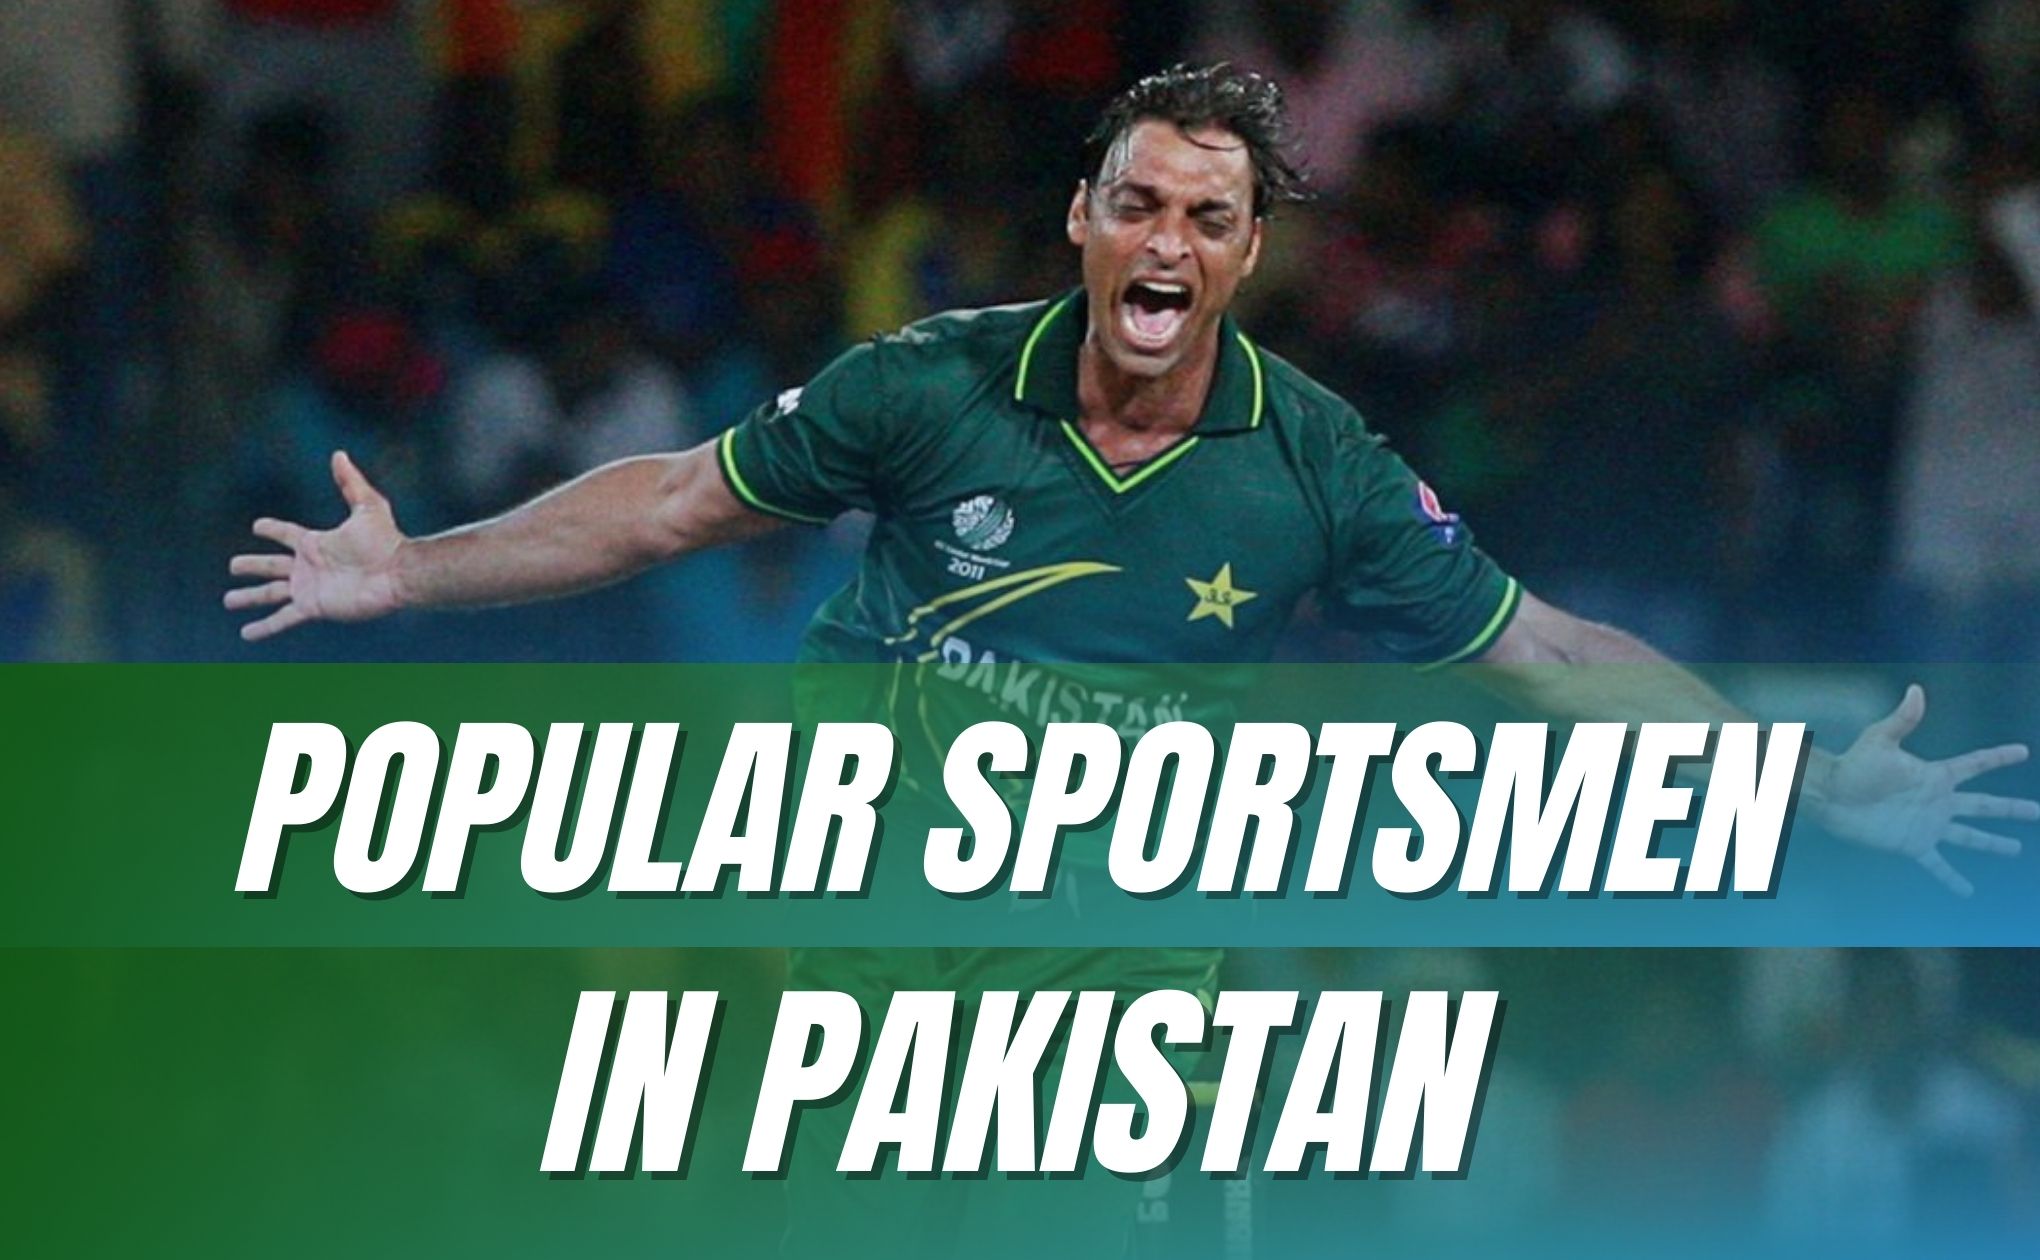 popular sportsmen in pakistan